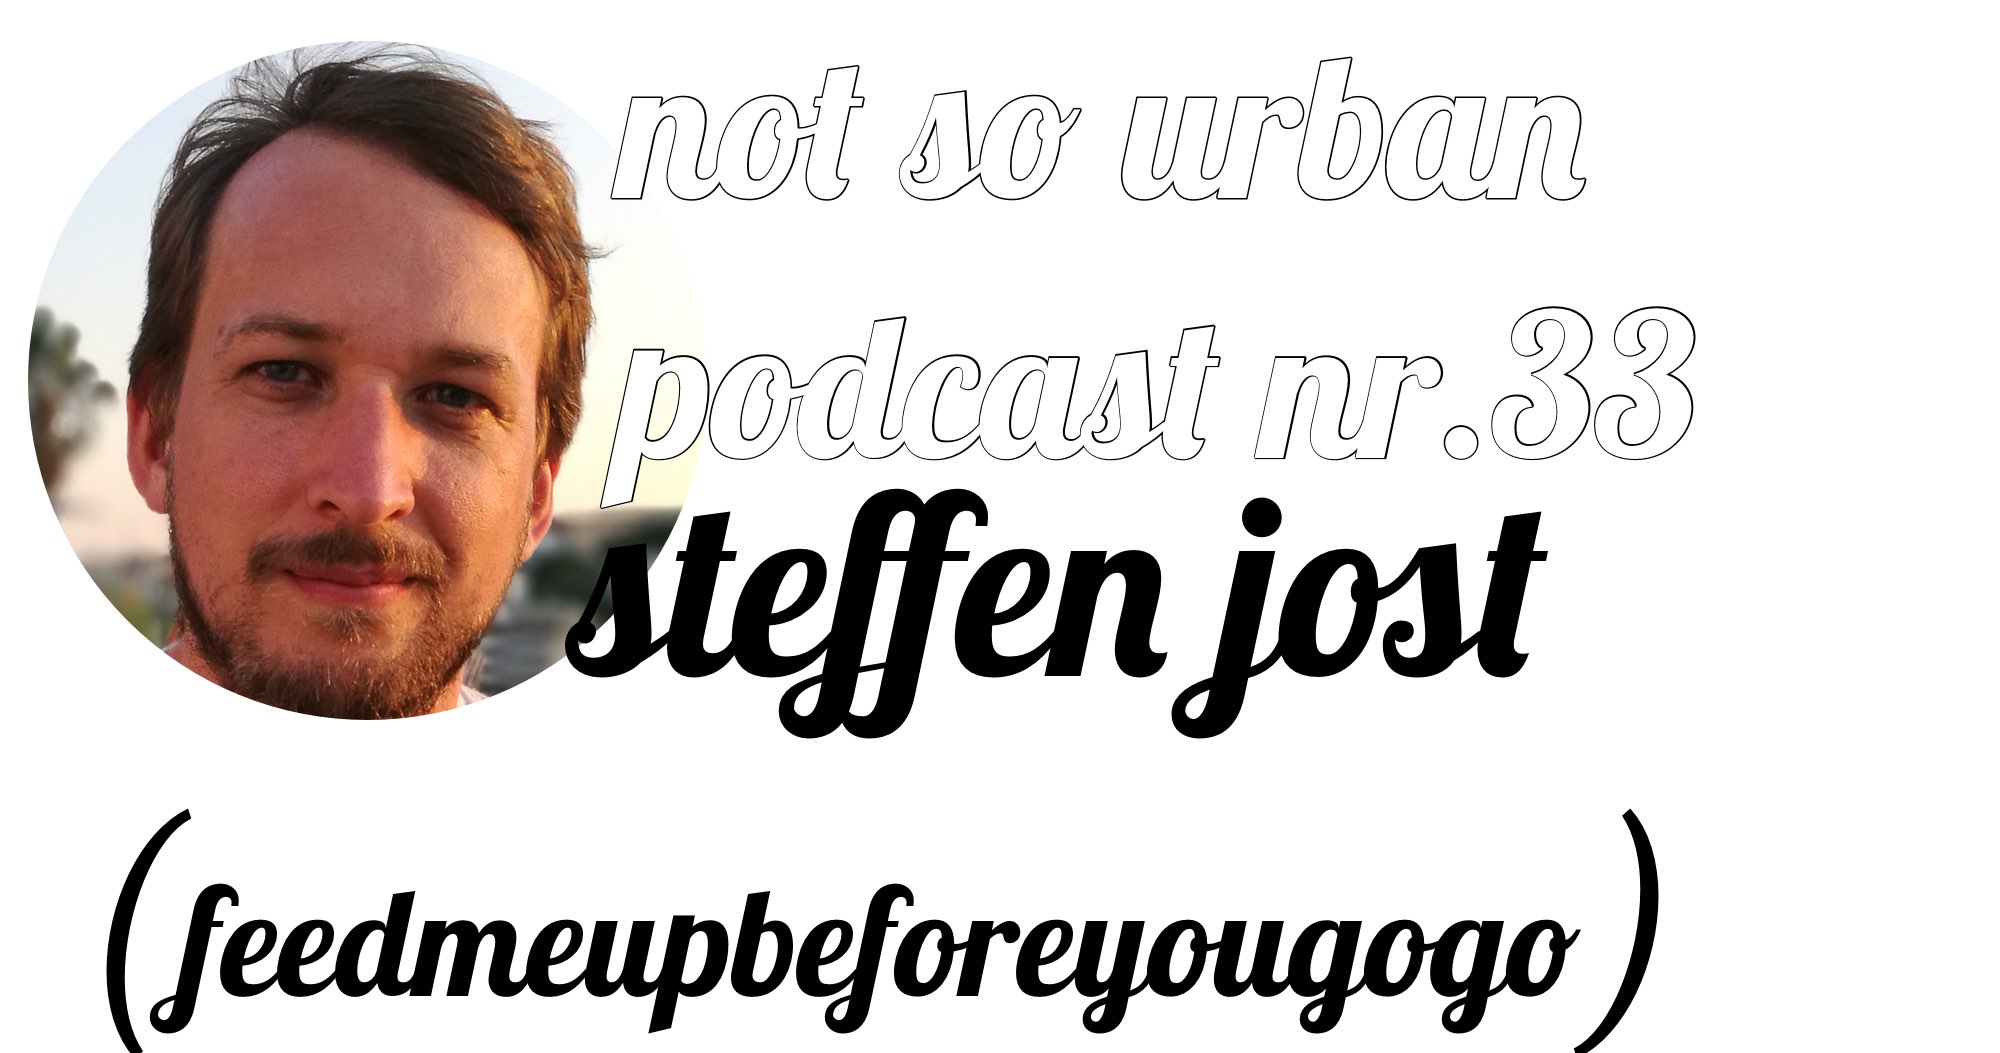 not so urban Podcast Nr.33 mit Steffen Jost (feedmeupbeforeyougogo) (Interviewer: Andreas Allgeyer)